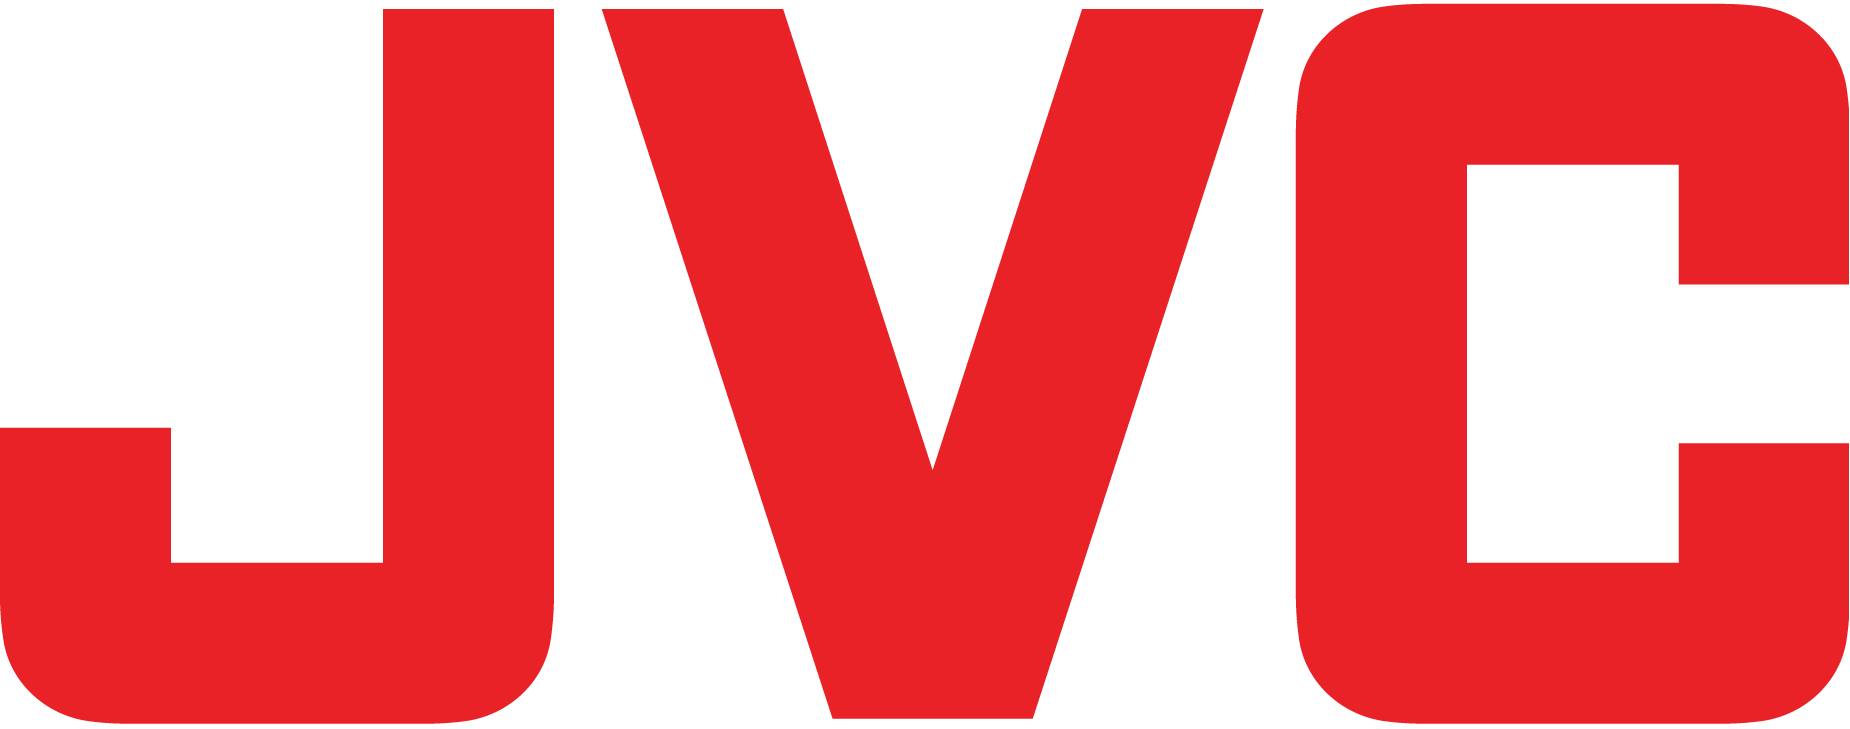 JVC Logo